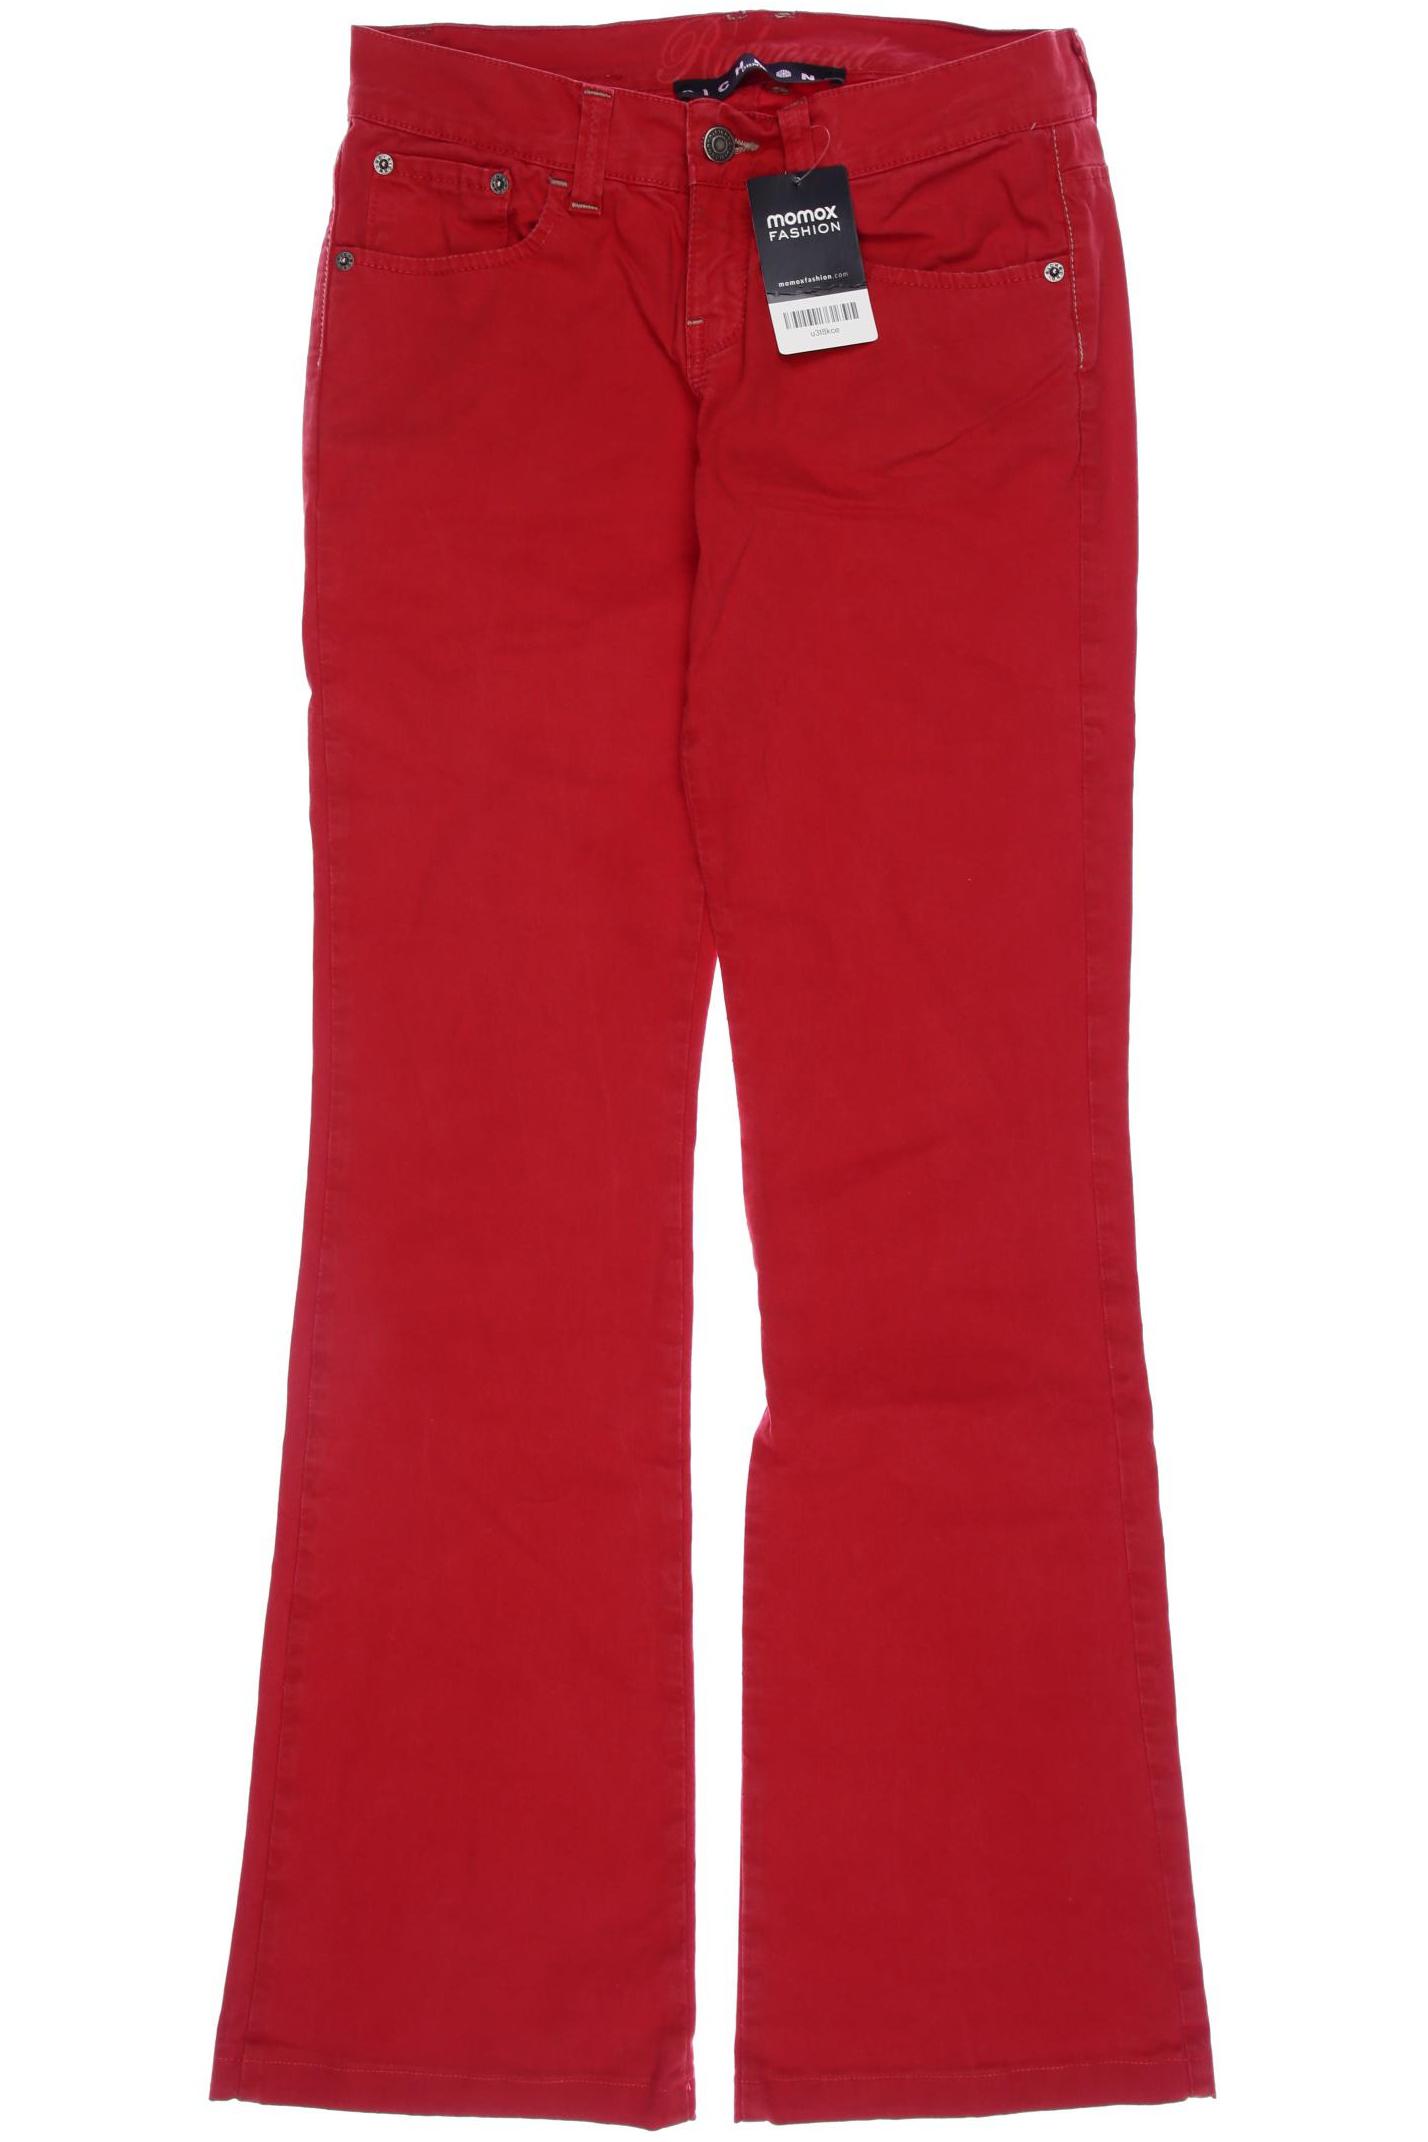 JOHN RICHMOND Damen Jeans, rot von John Richmond